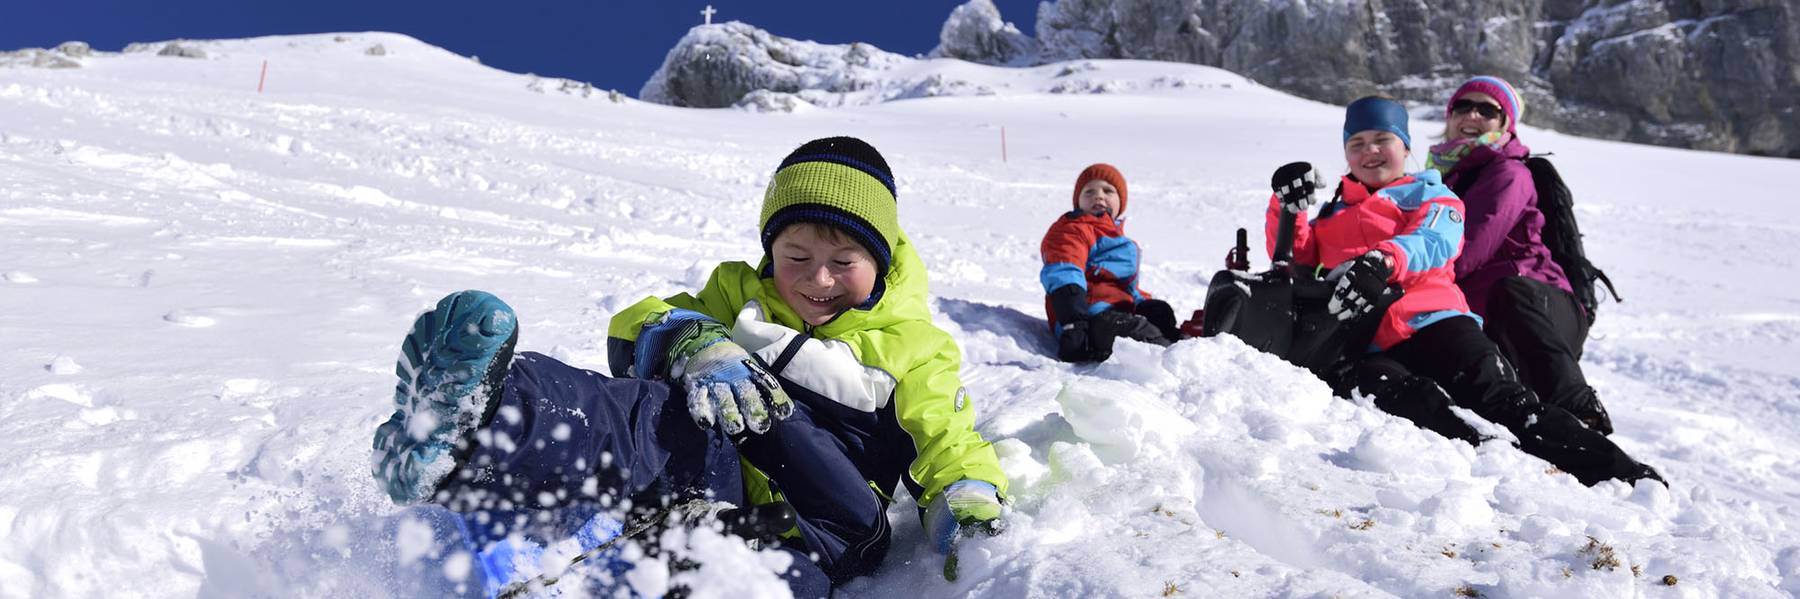 Familienurlaub in der Karwendelregion im Winter